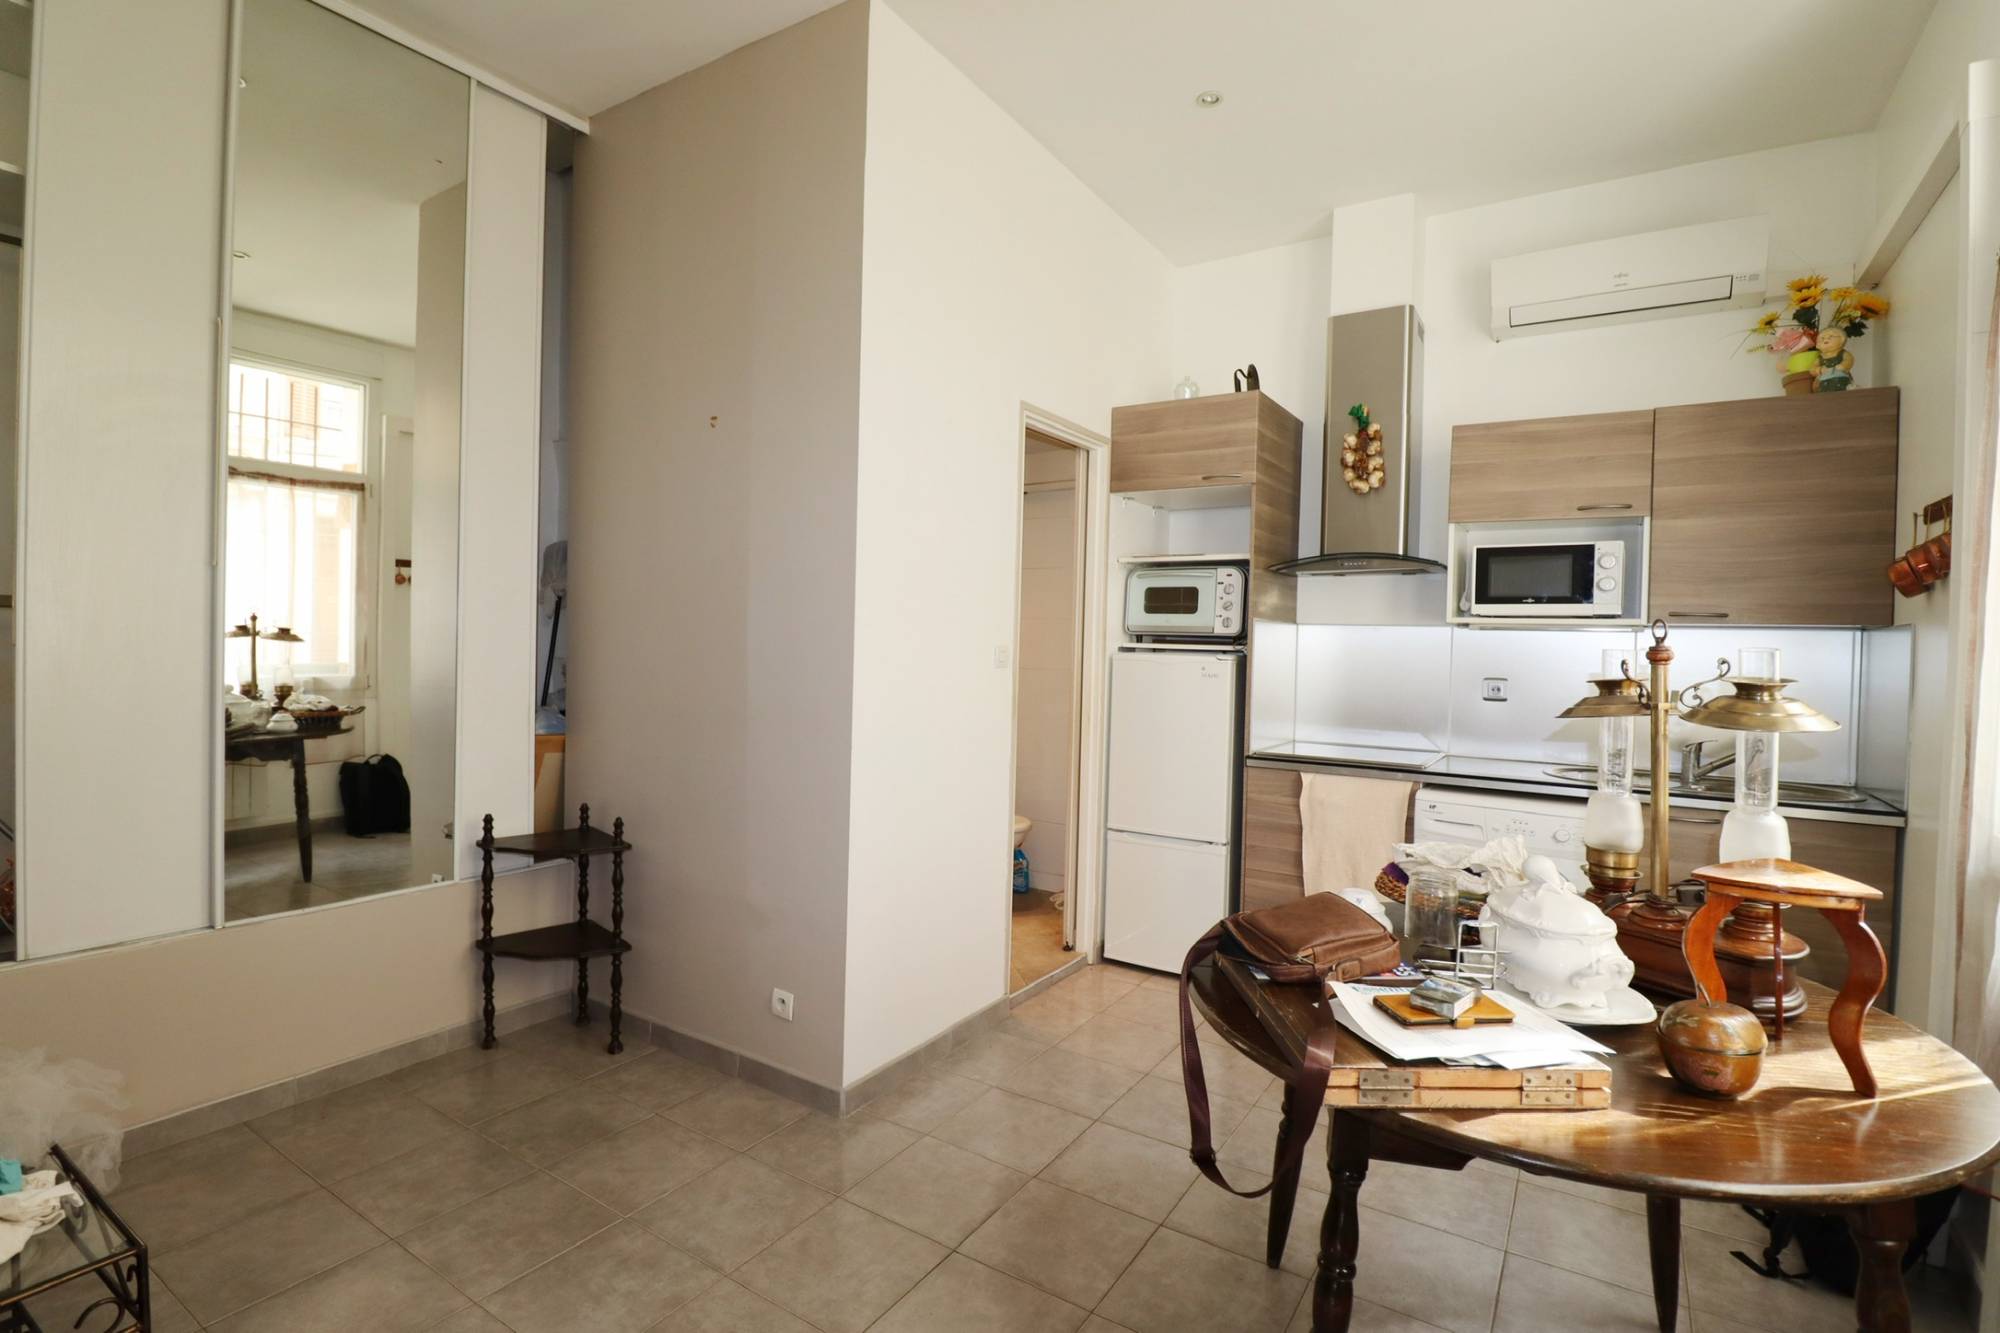 A vendre appartement 2 pièces 28 m² avec cave secteur Camas 13005 Marseille